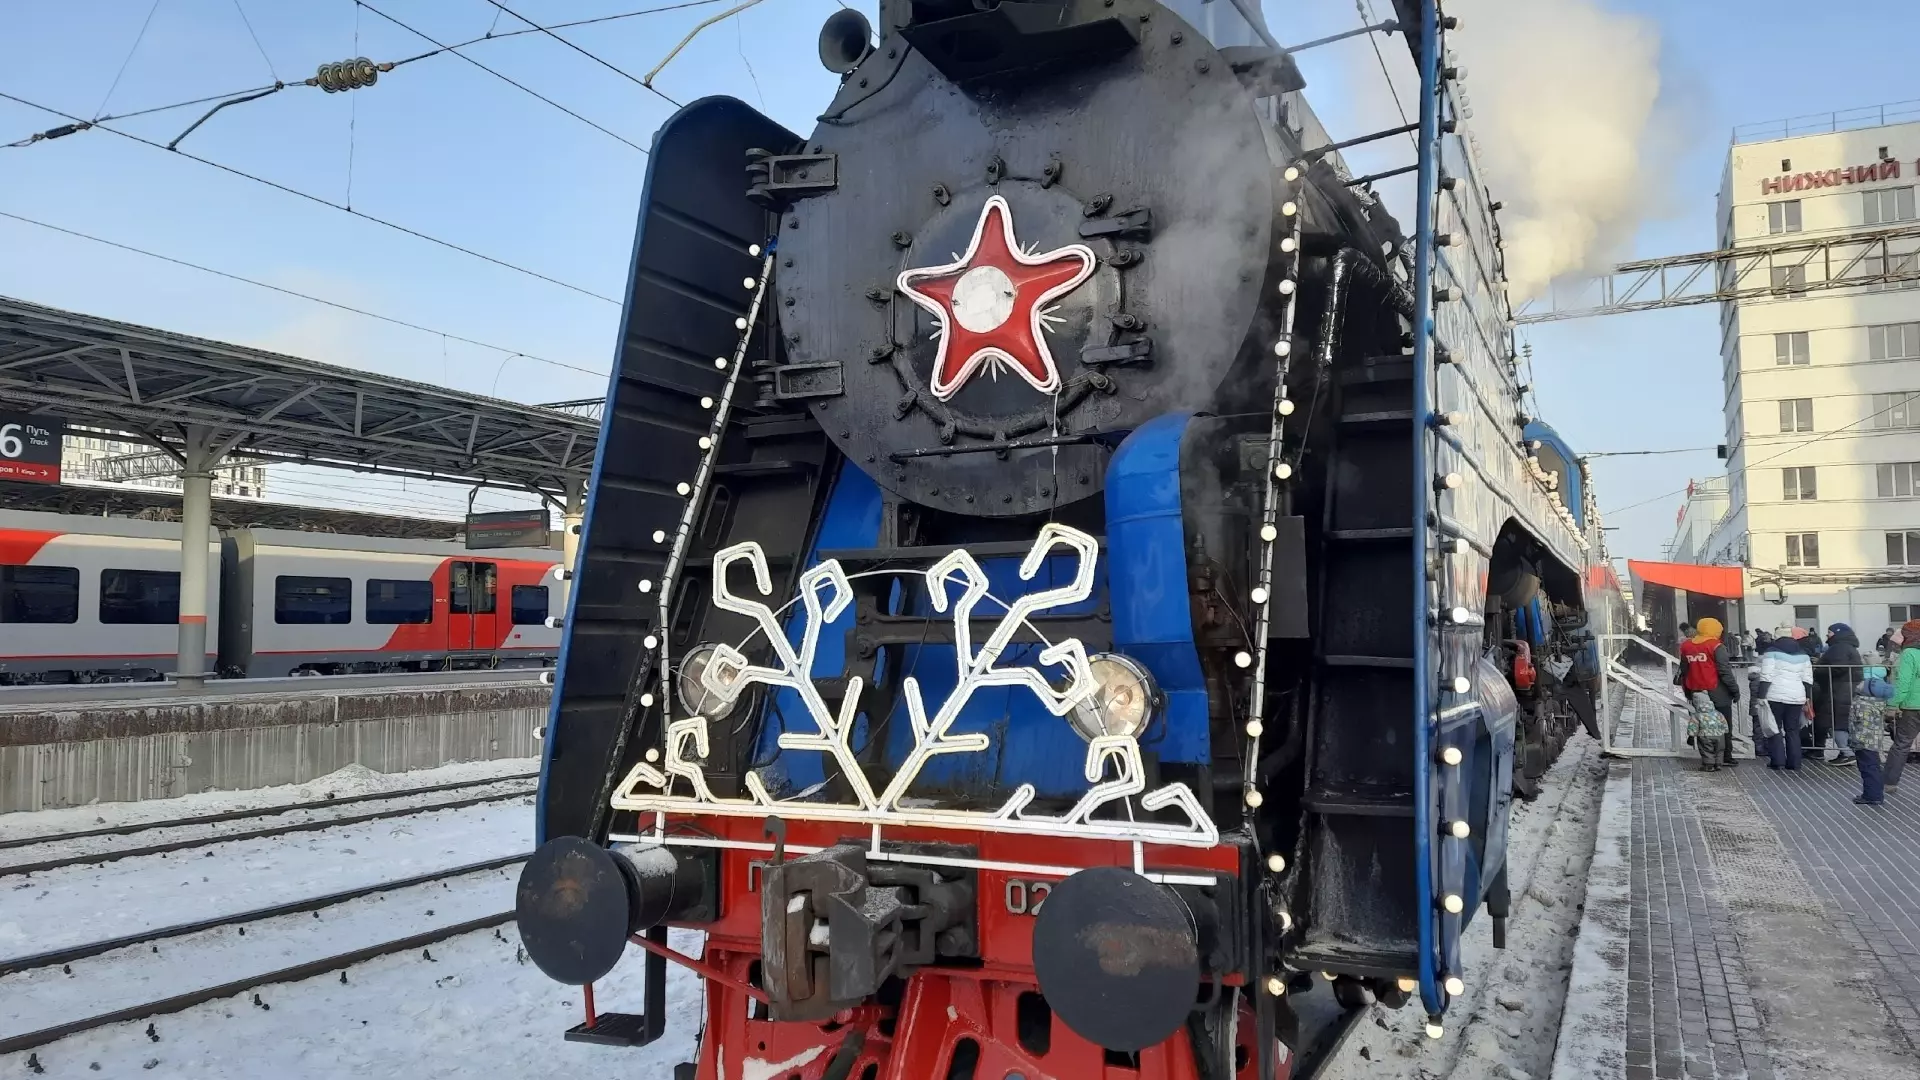 Нижегородцы пожаловались на нехватку билетов на поезд Деда Мороза